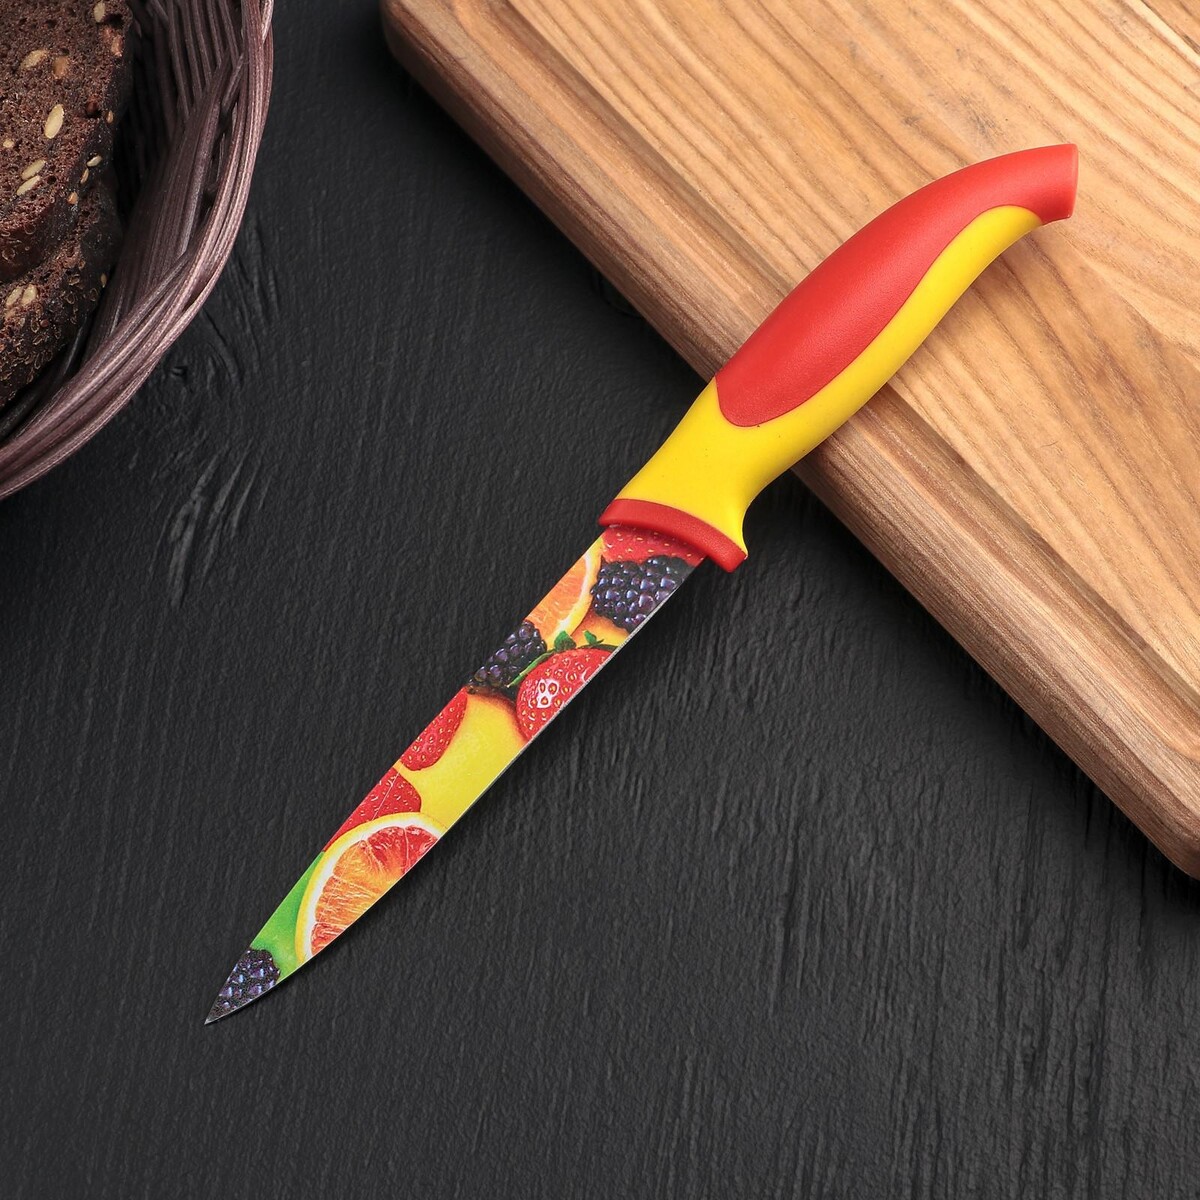 Нож кухонный с антиналипающим покрытием доляна нож кухонный с антиналипающим покрытием доляна